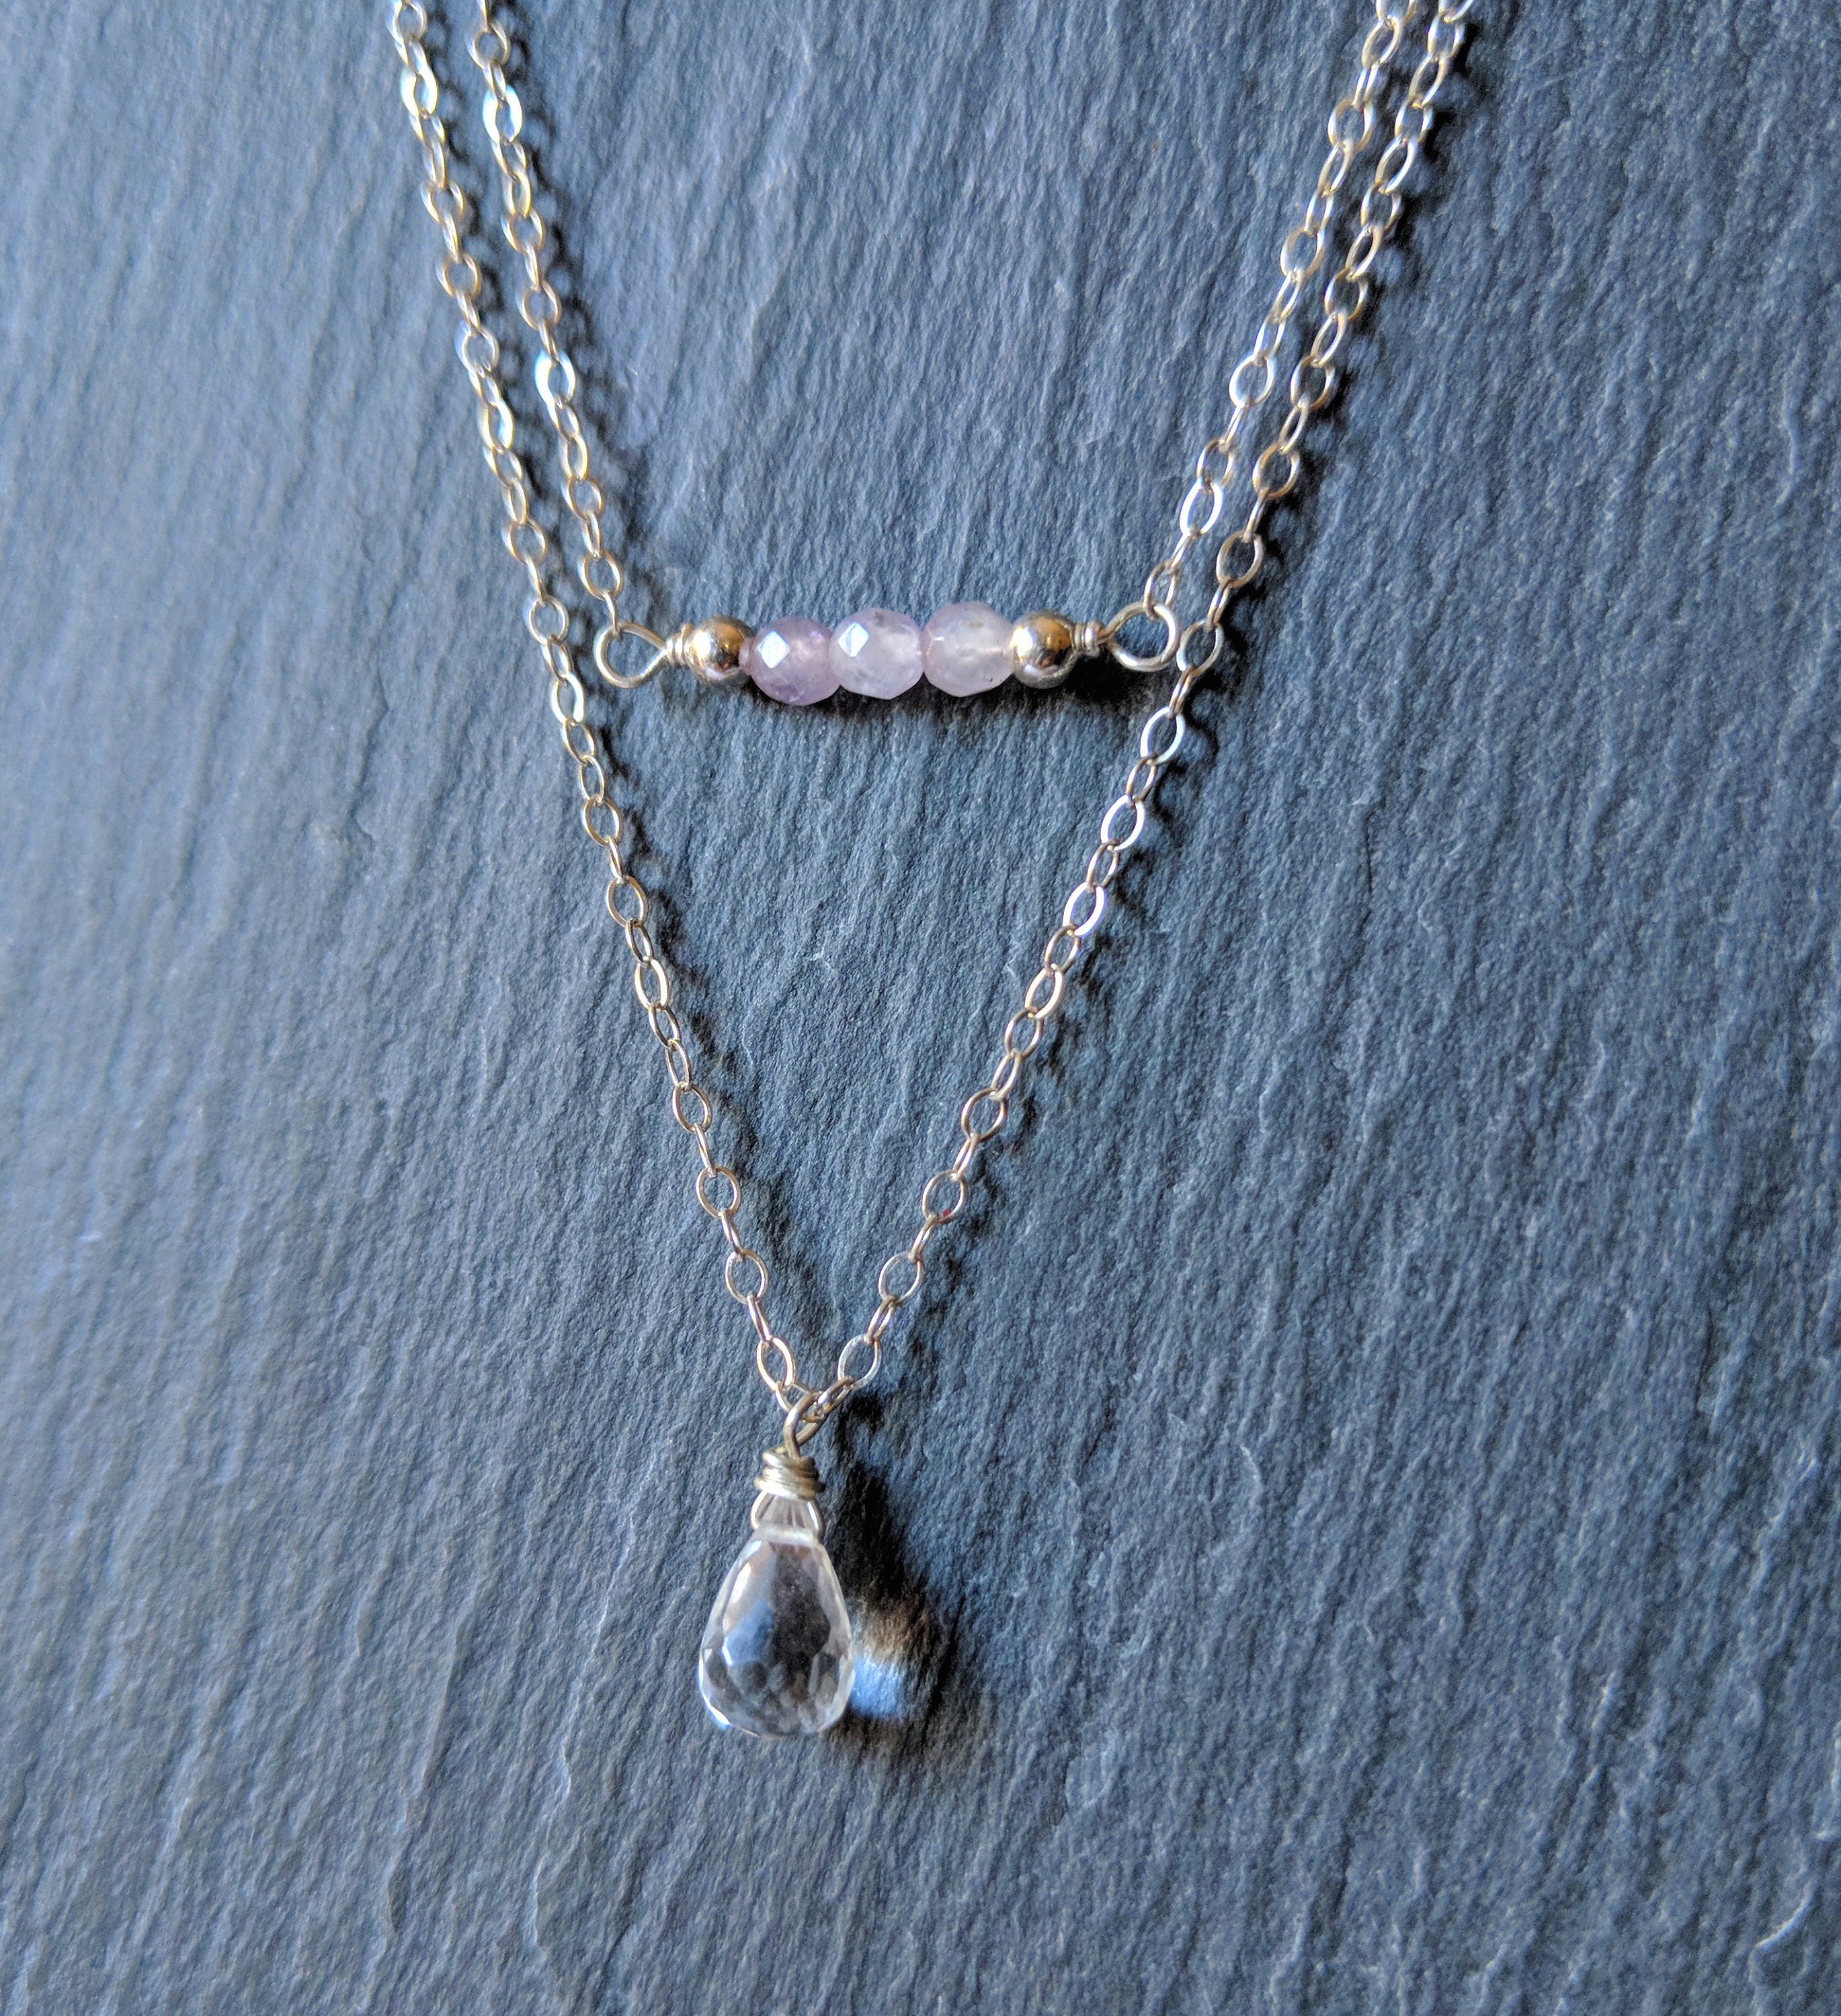 Amethyst necklace amethyst birthstone amethyst jewelry | Etsy